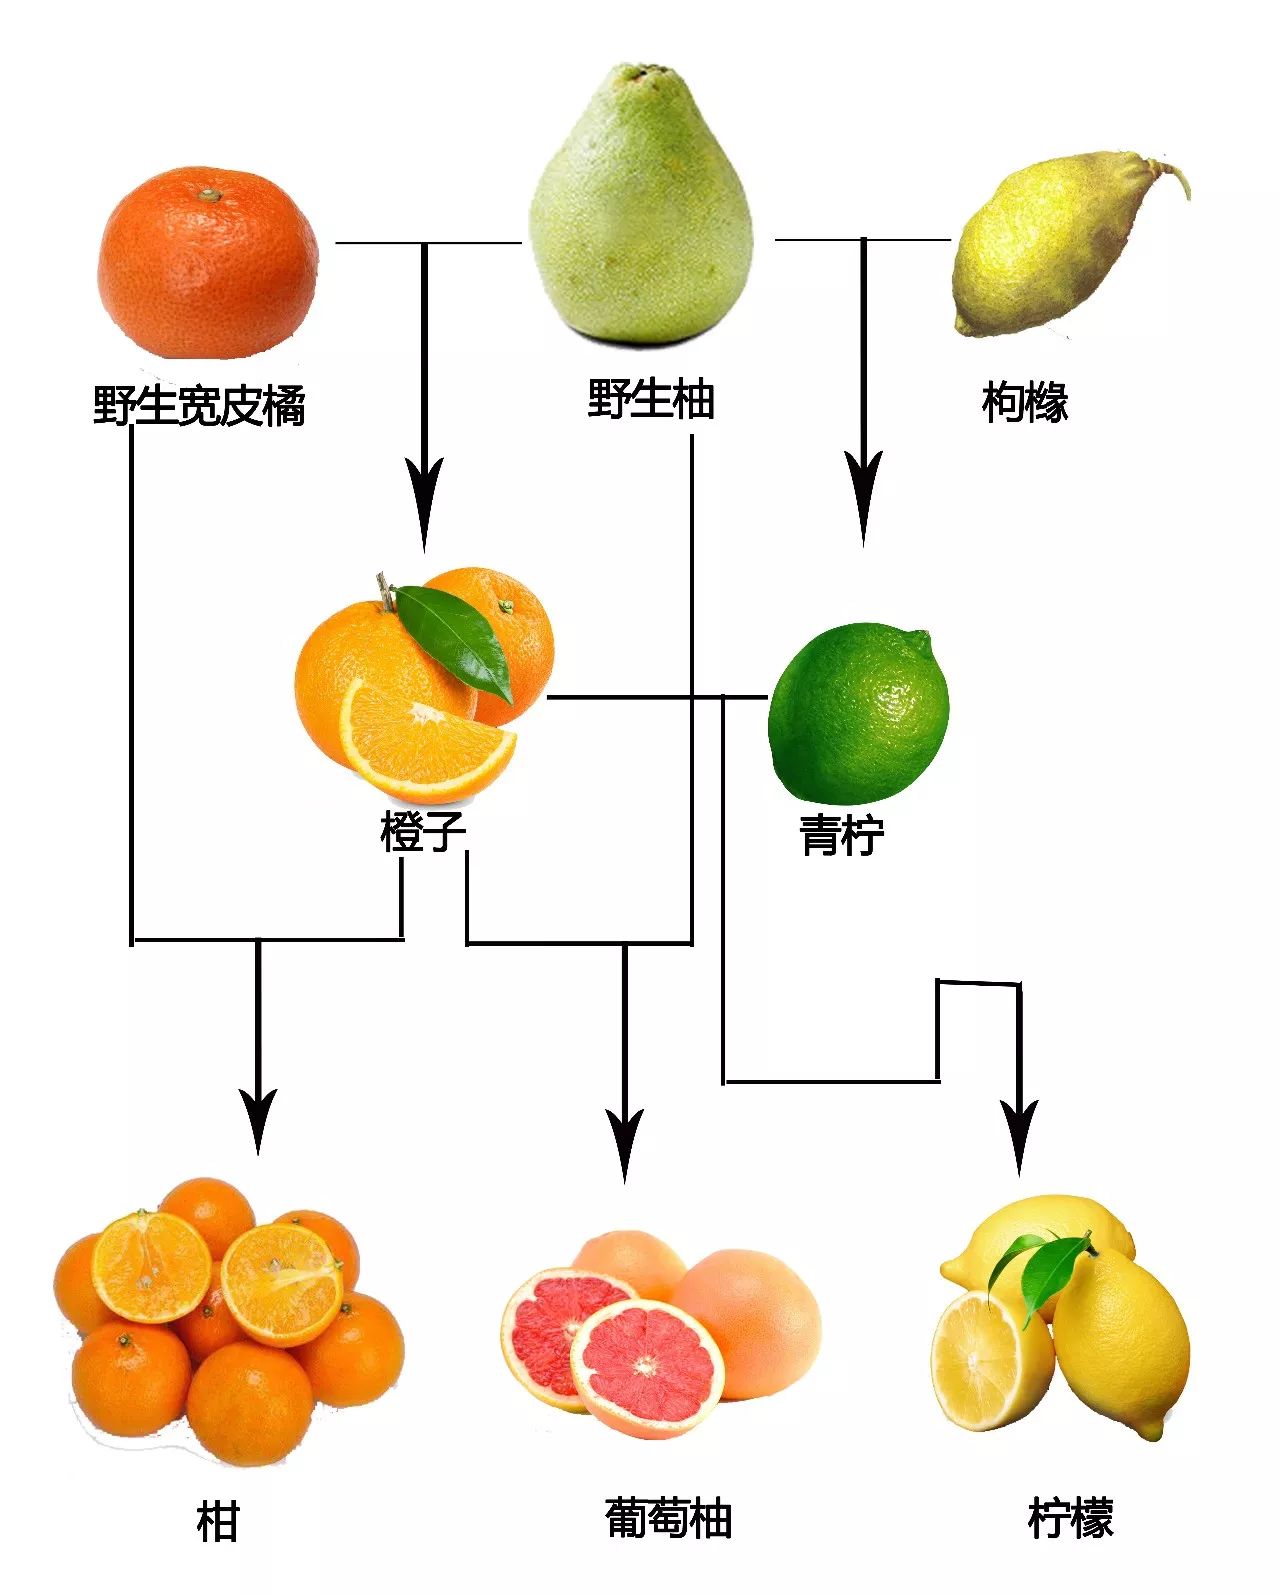 野生柚就是我们现在吃的柚子的老祖宗,宽皮橘就是我们常吃的橘子的老